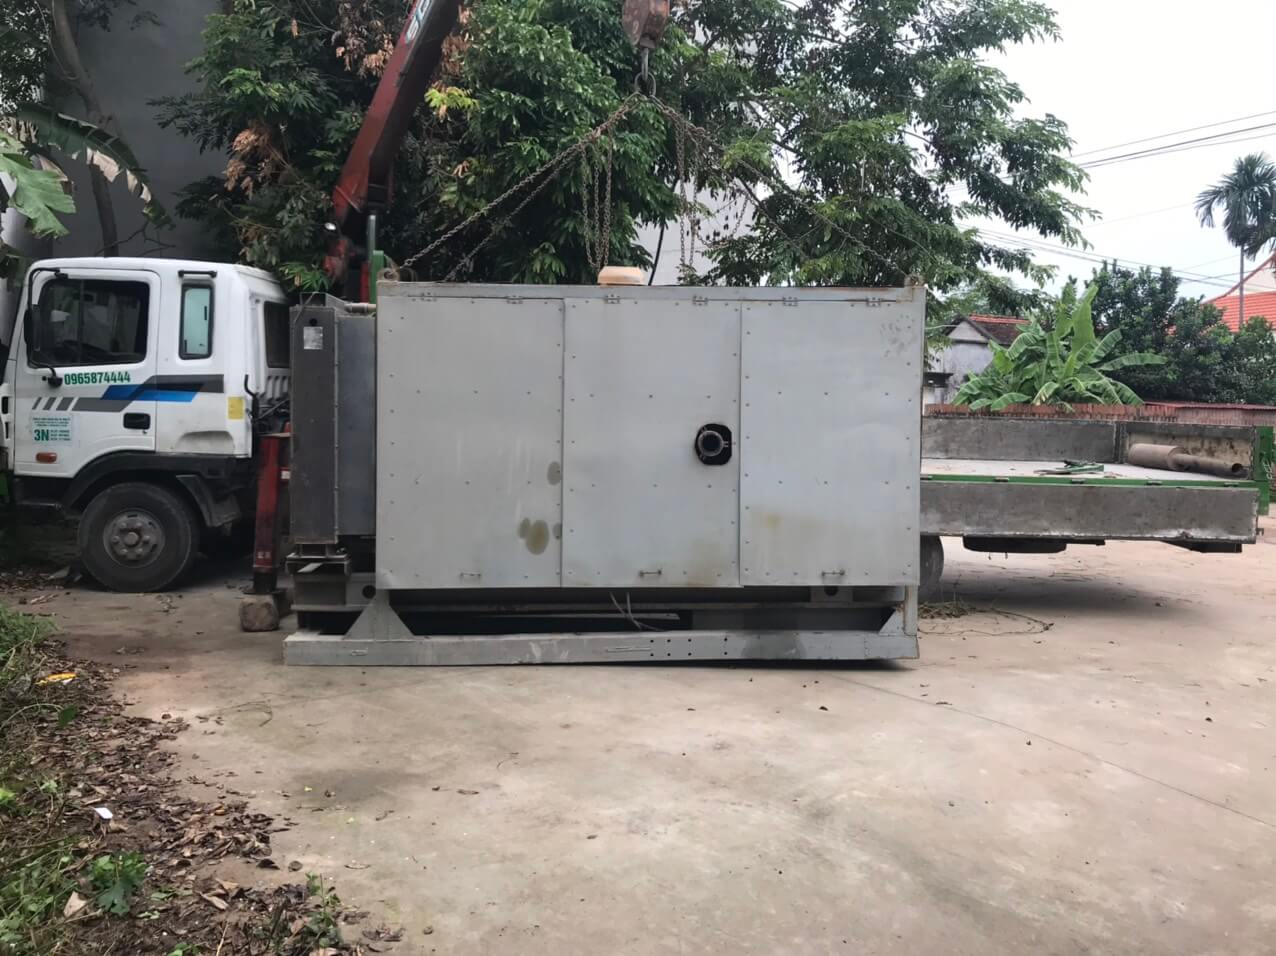 Vận Tải Xanh cung cấp dịch vụ cho thuê xe cẩu tự hành 15 tấn tại Hà Nội – Liên hệ hotline 0965874444